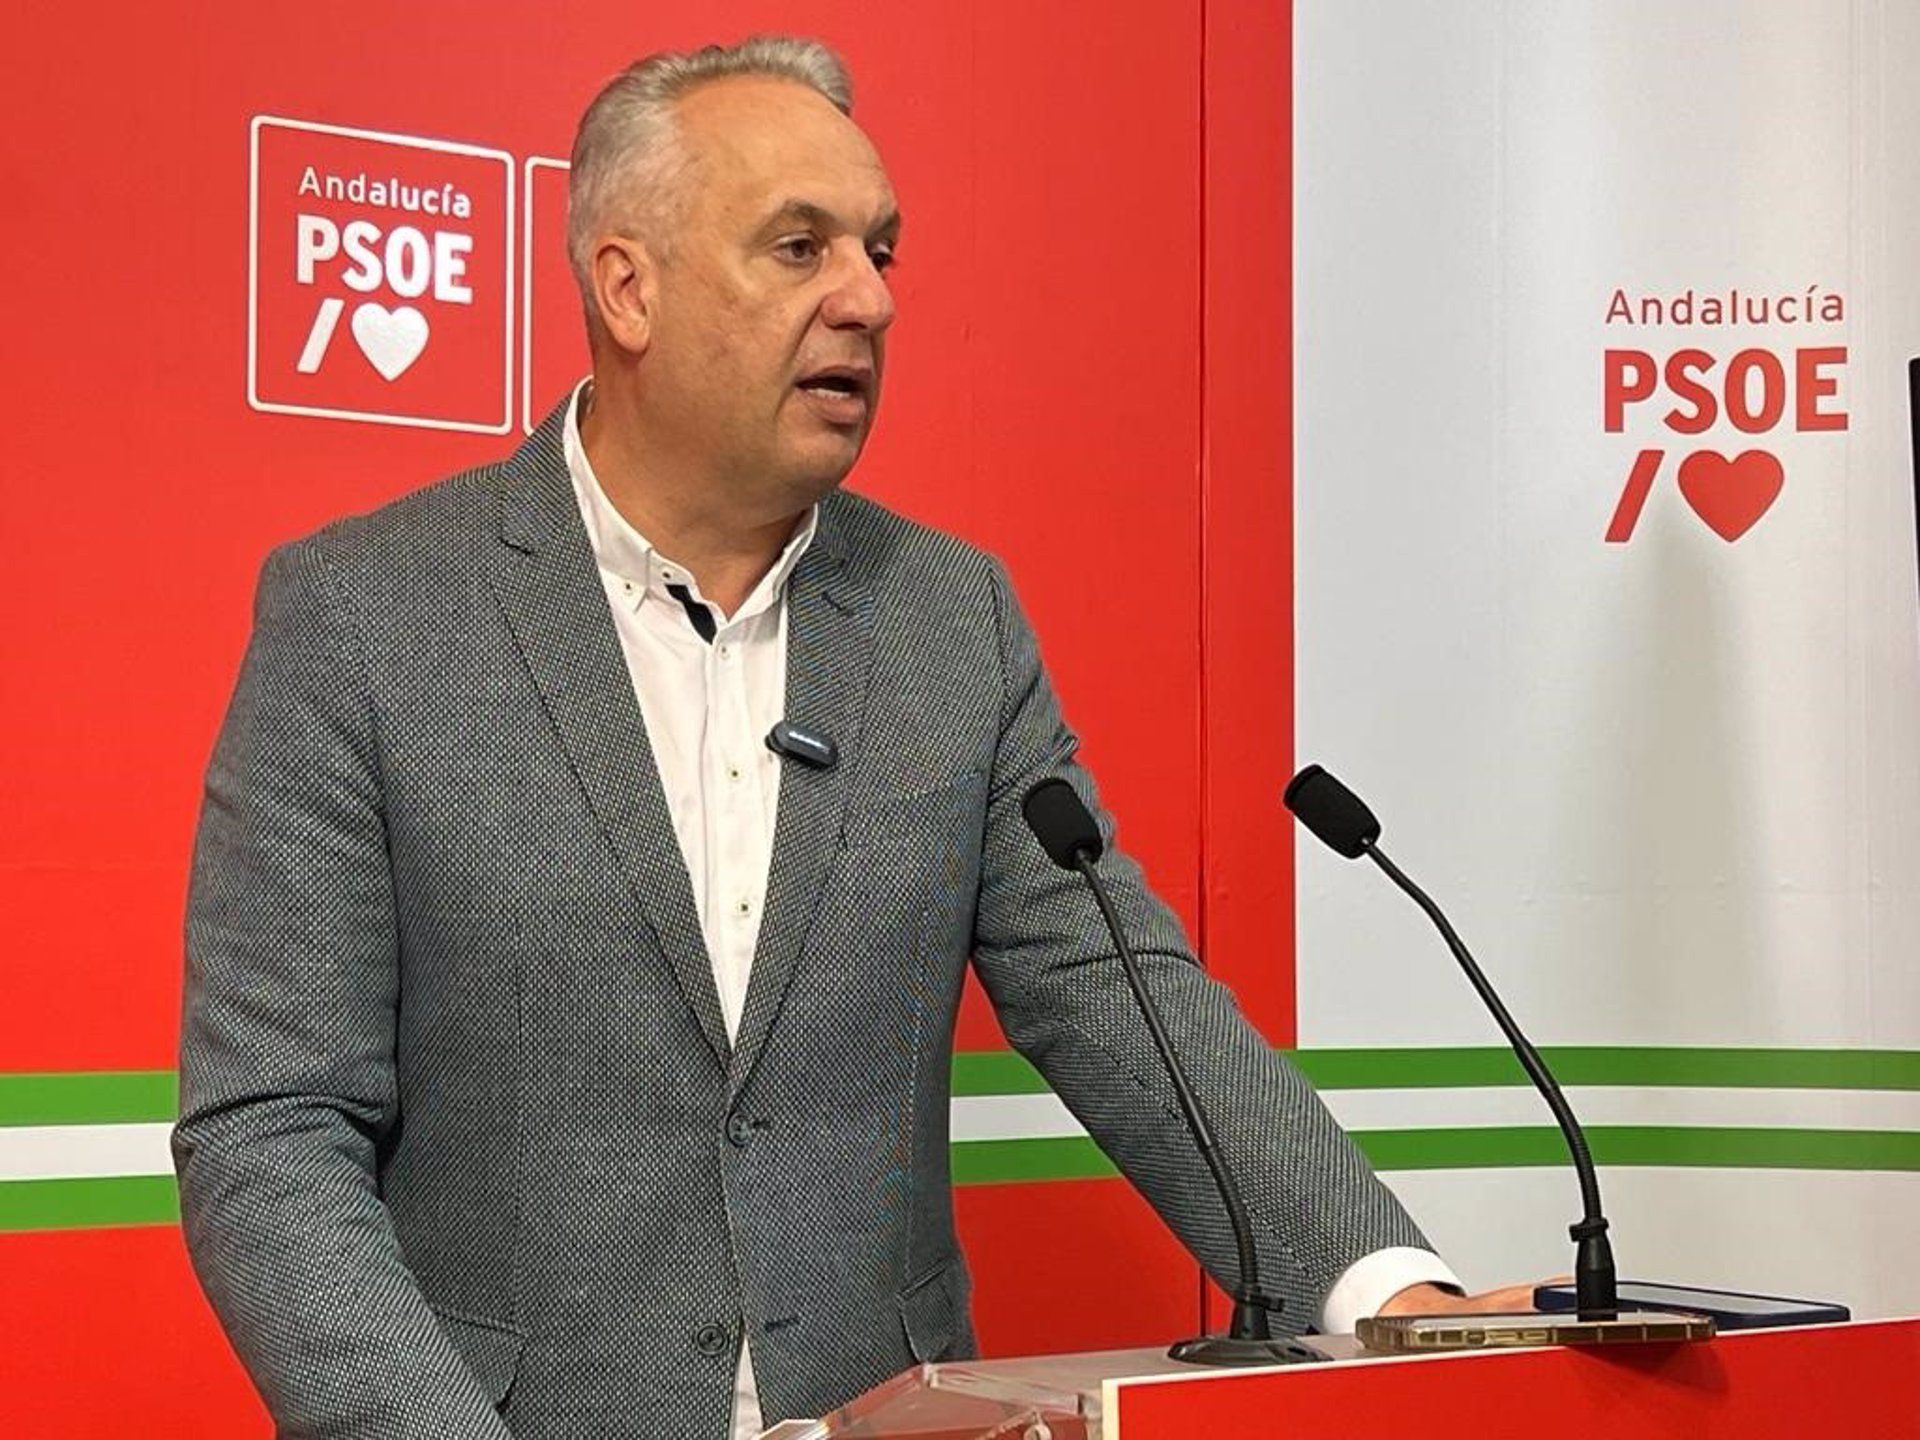  Boix buscará "un punto de acuerdo" con La Línea 100x100 para "ratificar su continuidad" en la Diputación. Foto: Ruiz Boix en rueda de prensa. - PSOE - Archivo.